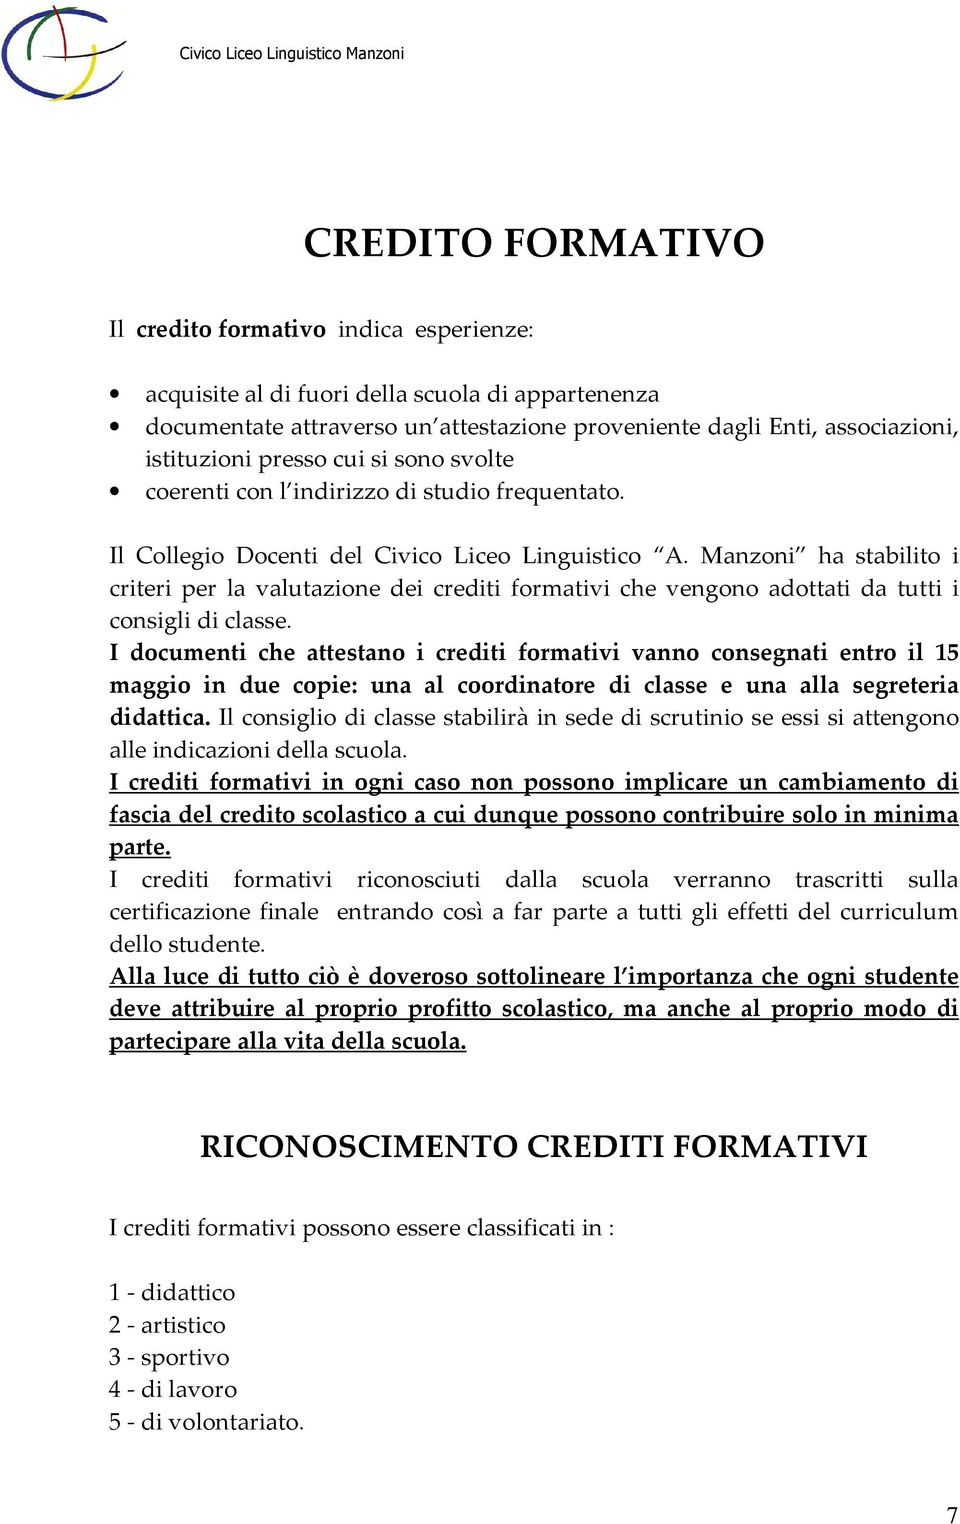 Manzoni ha stabilito i criteri per la valutazione dei crediti formativi che vengono adottati da tutti i consigli di classe.